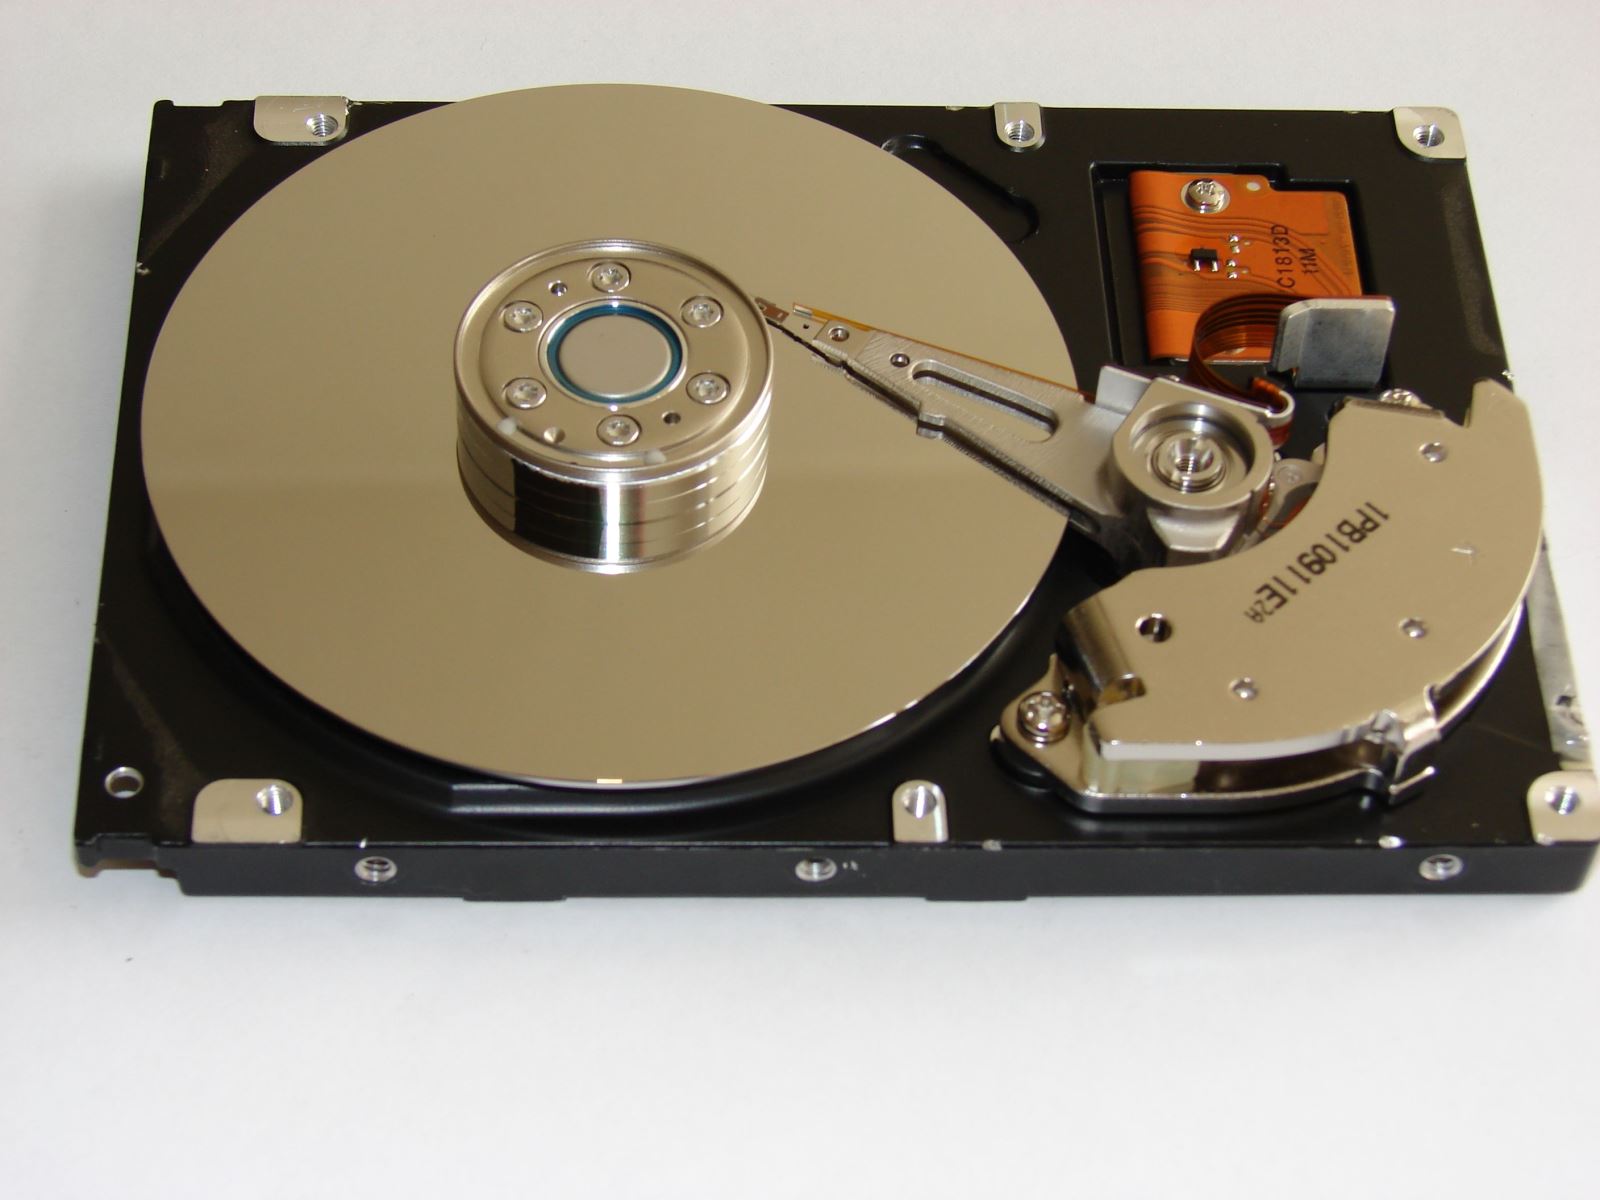 hard drive repair, hard drive data recovery